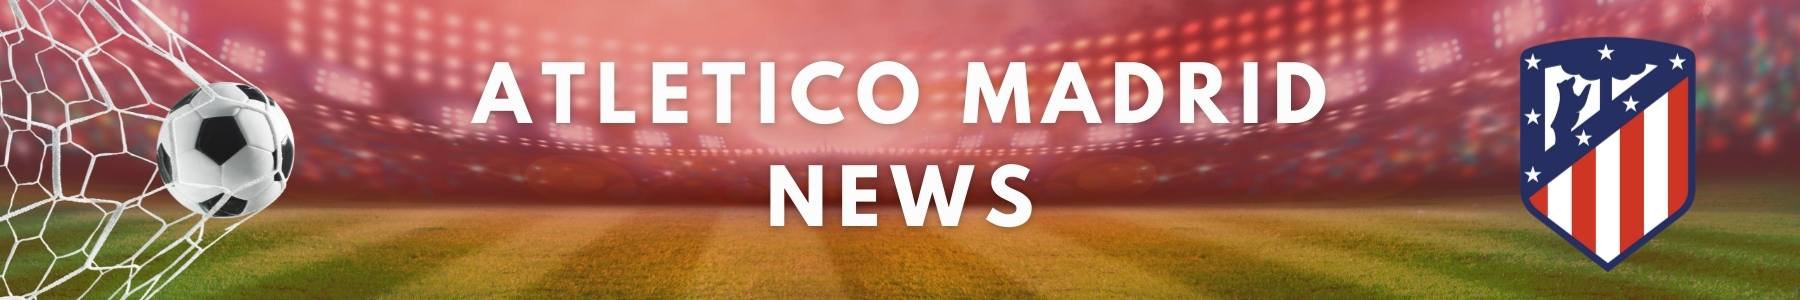 Atletico Madrid - Latest News